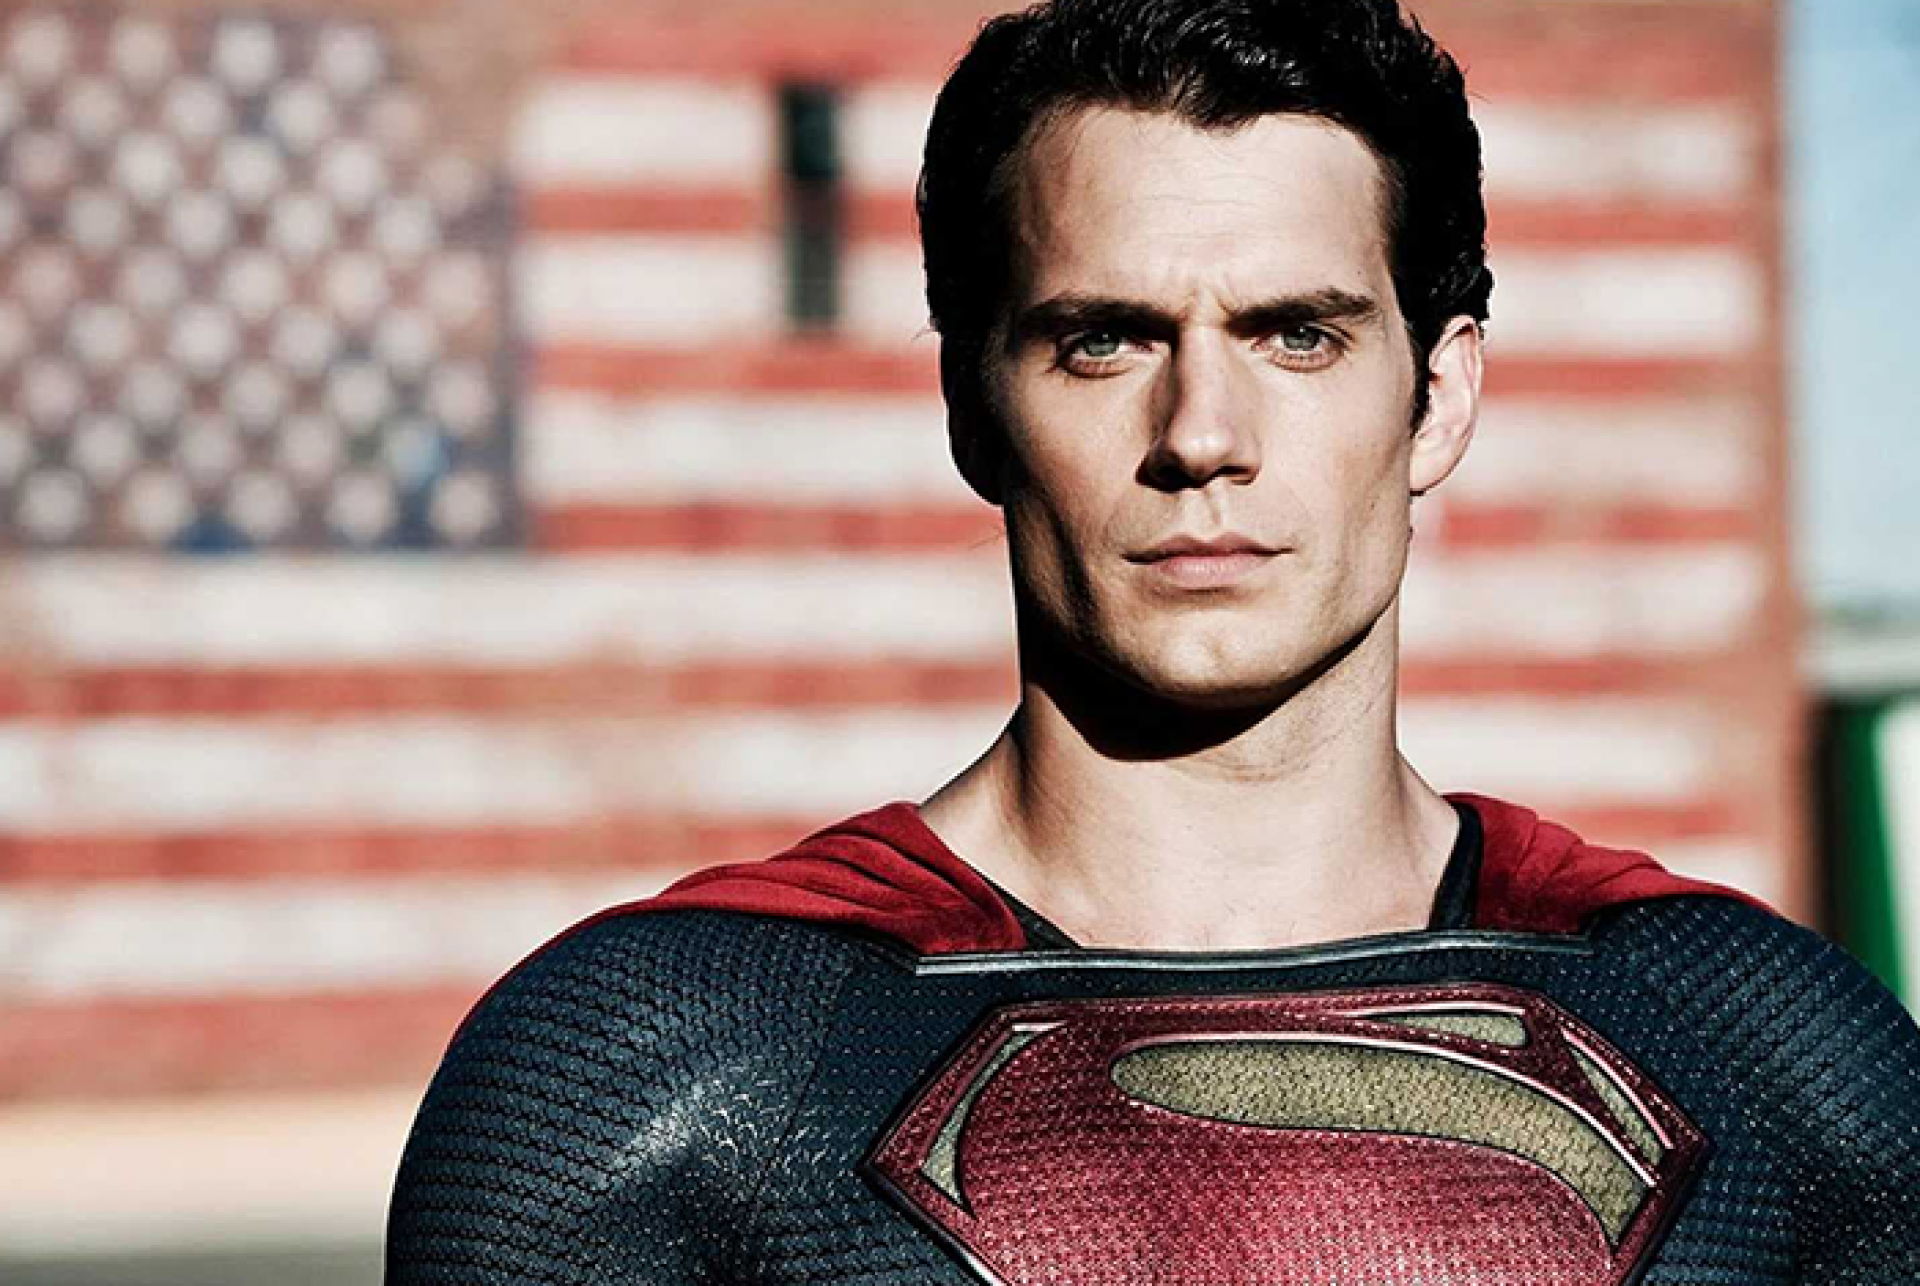 Henry Cavill revela que não será mais o 'Superman' após ter anunciado  dedicação exclusiva a franquia Jornal MEIA HORA - Celebridades e TV